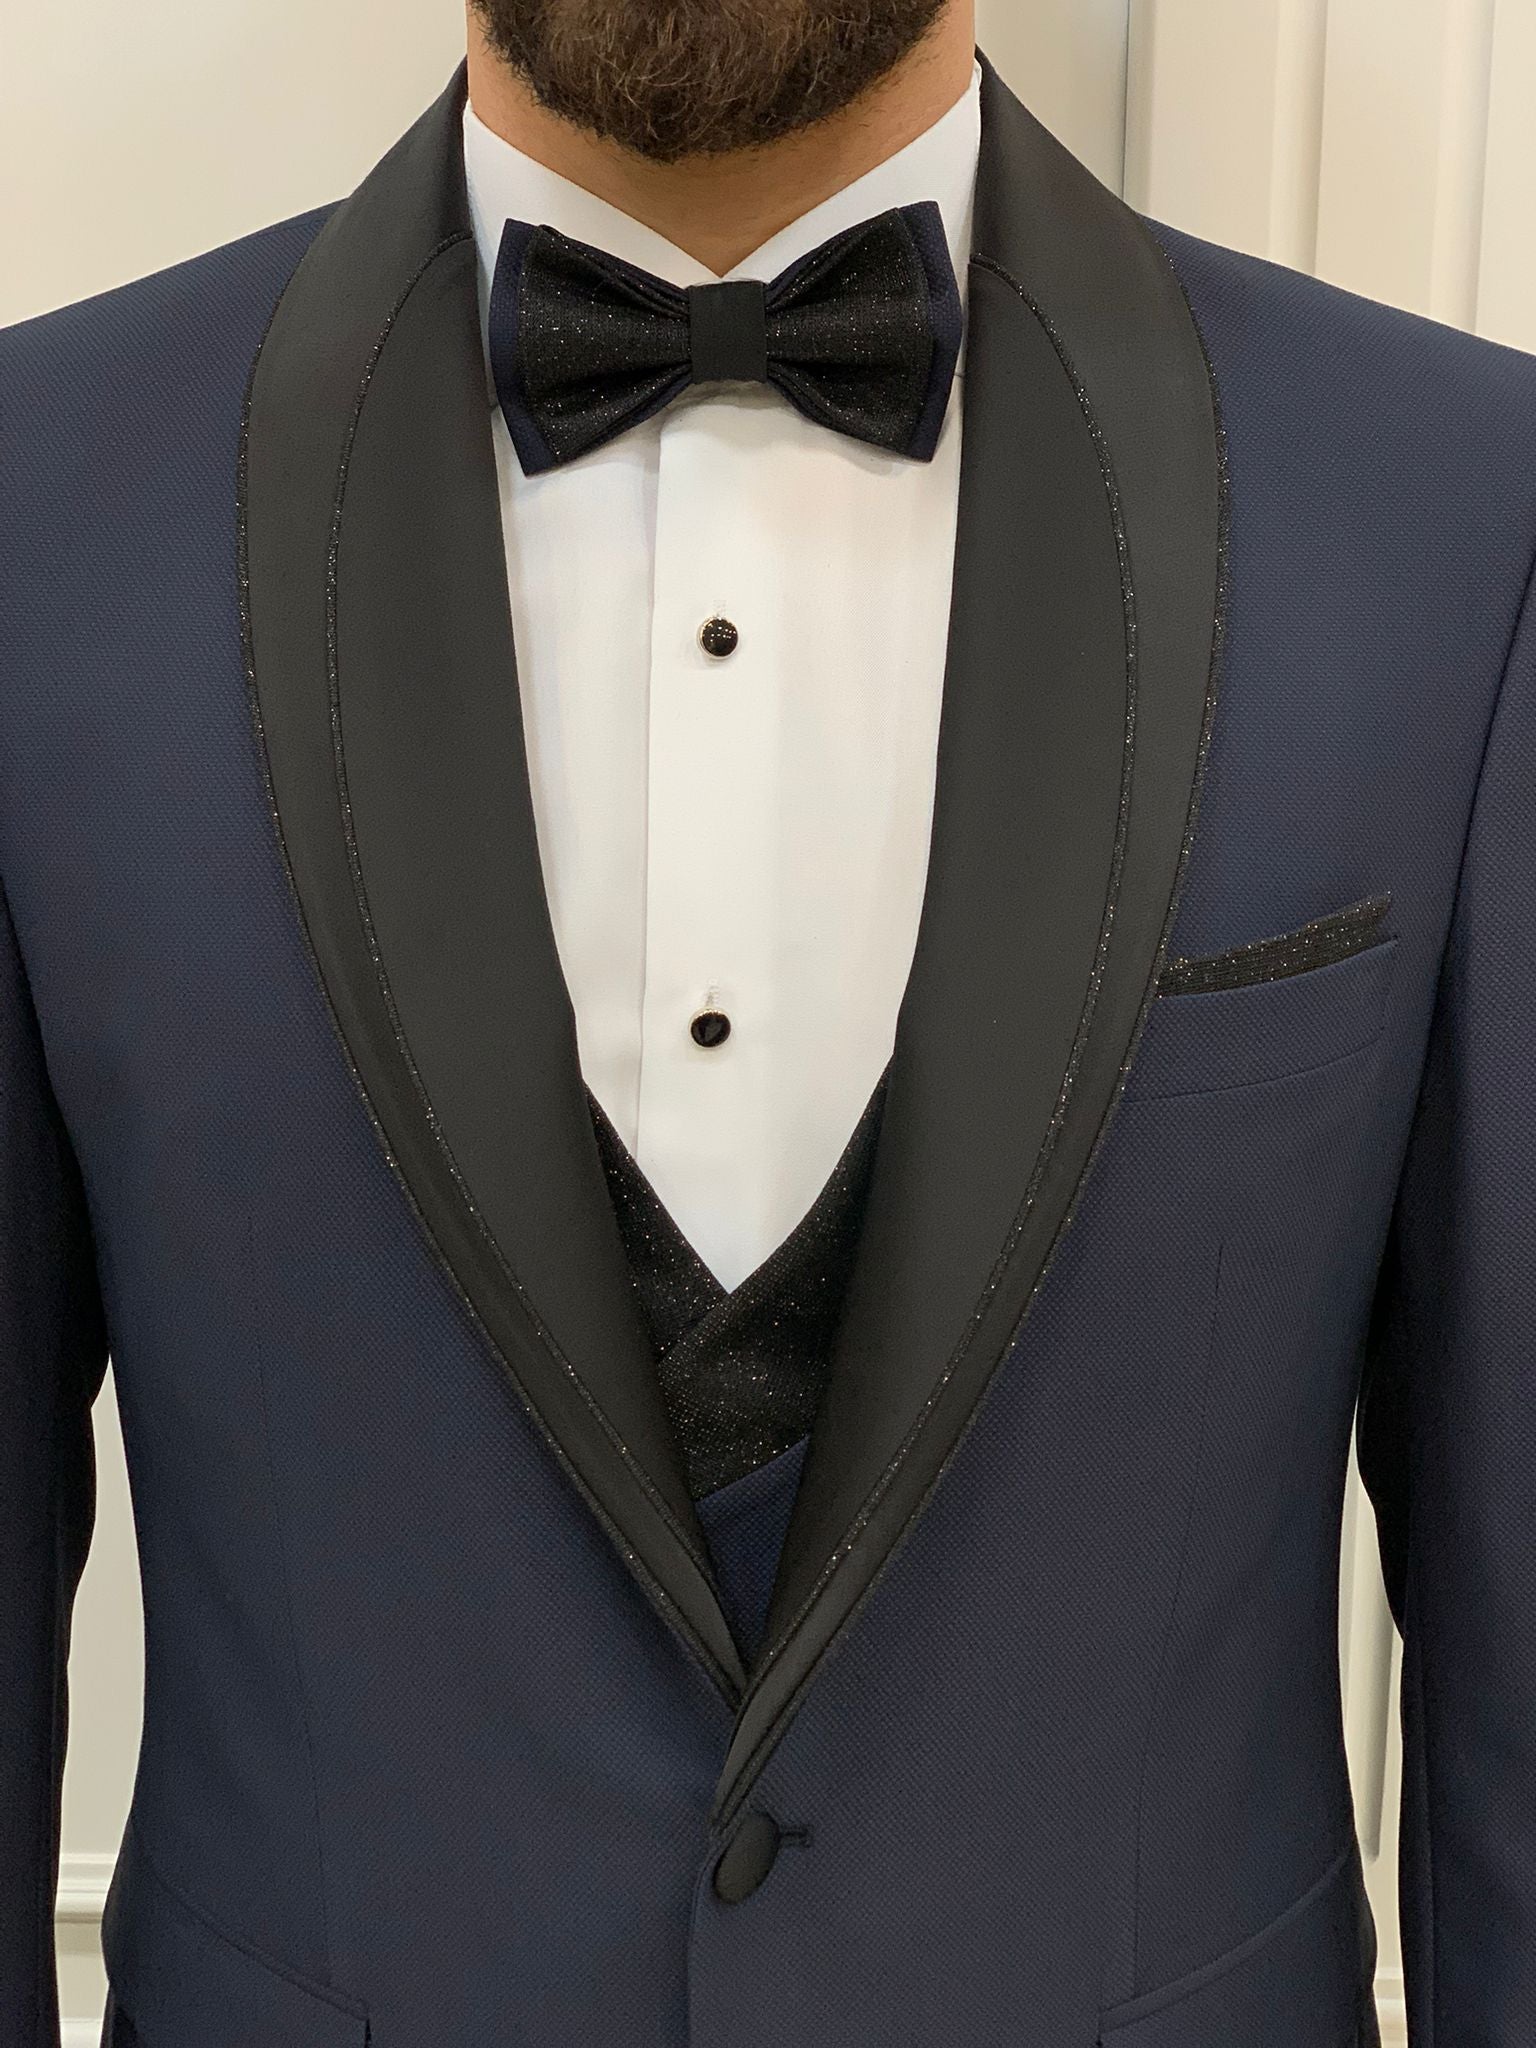 Bojoni Tishko Navy Diamond Shawl Collar Slim Fit Tuxedo | BOJONI